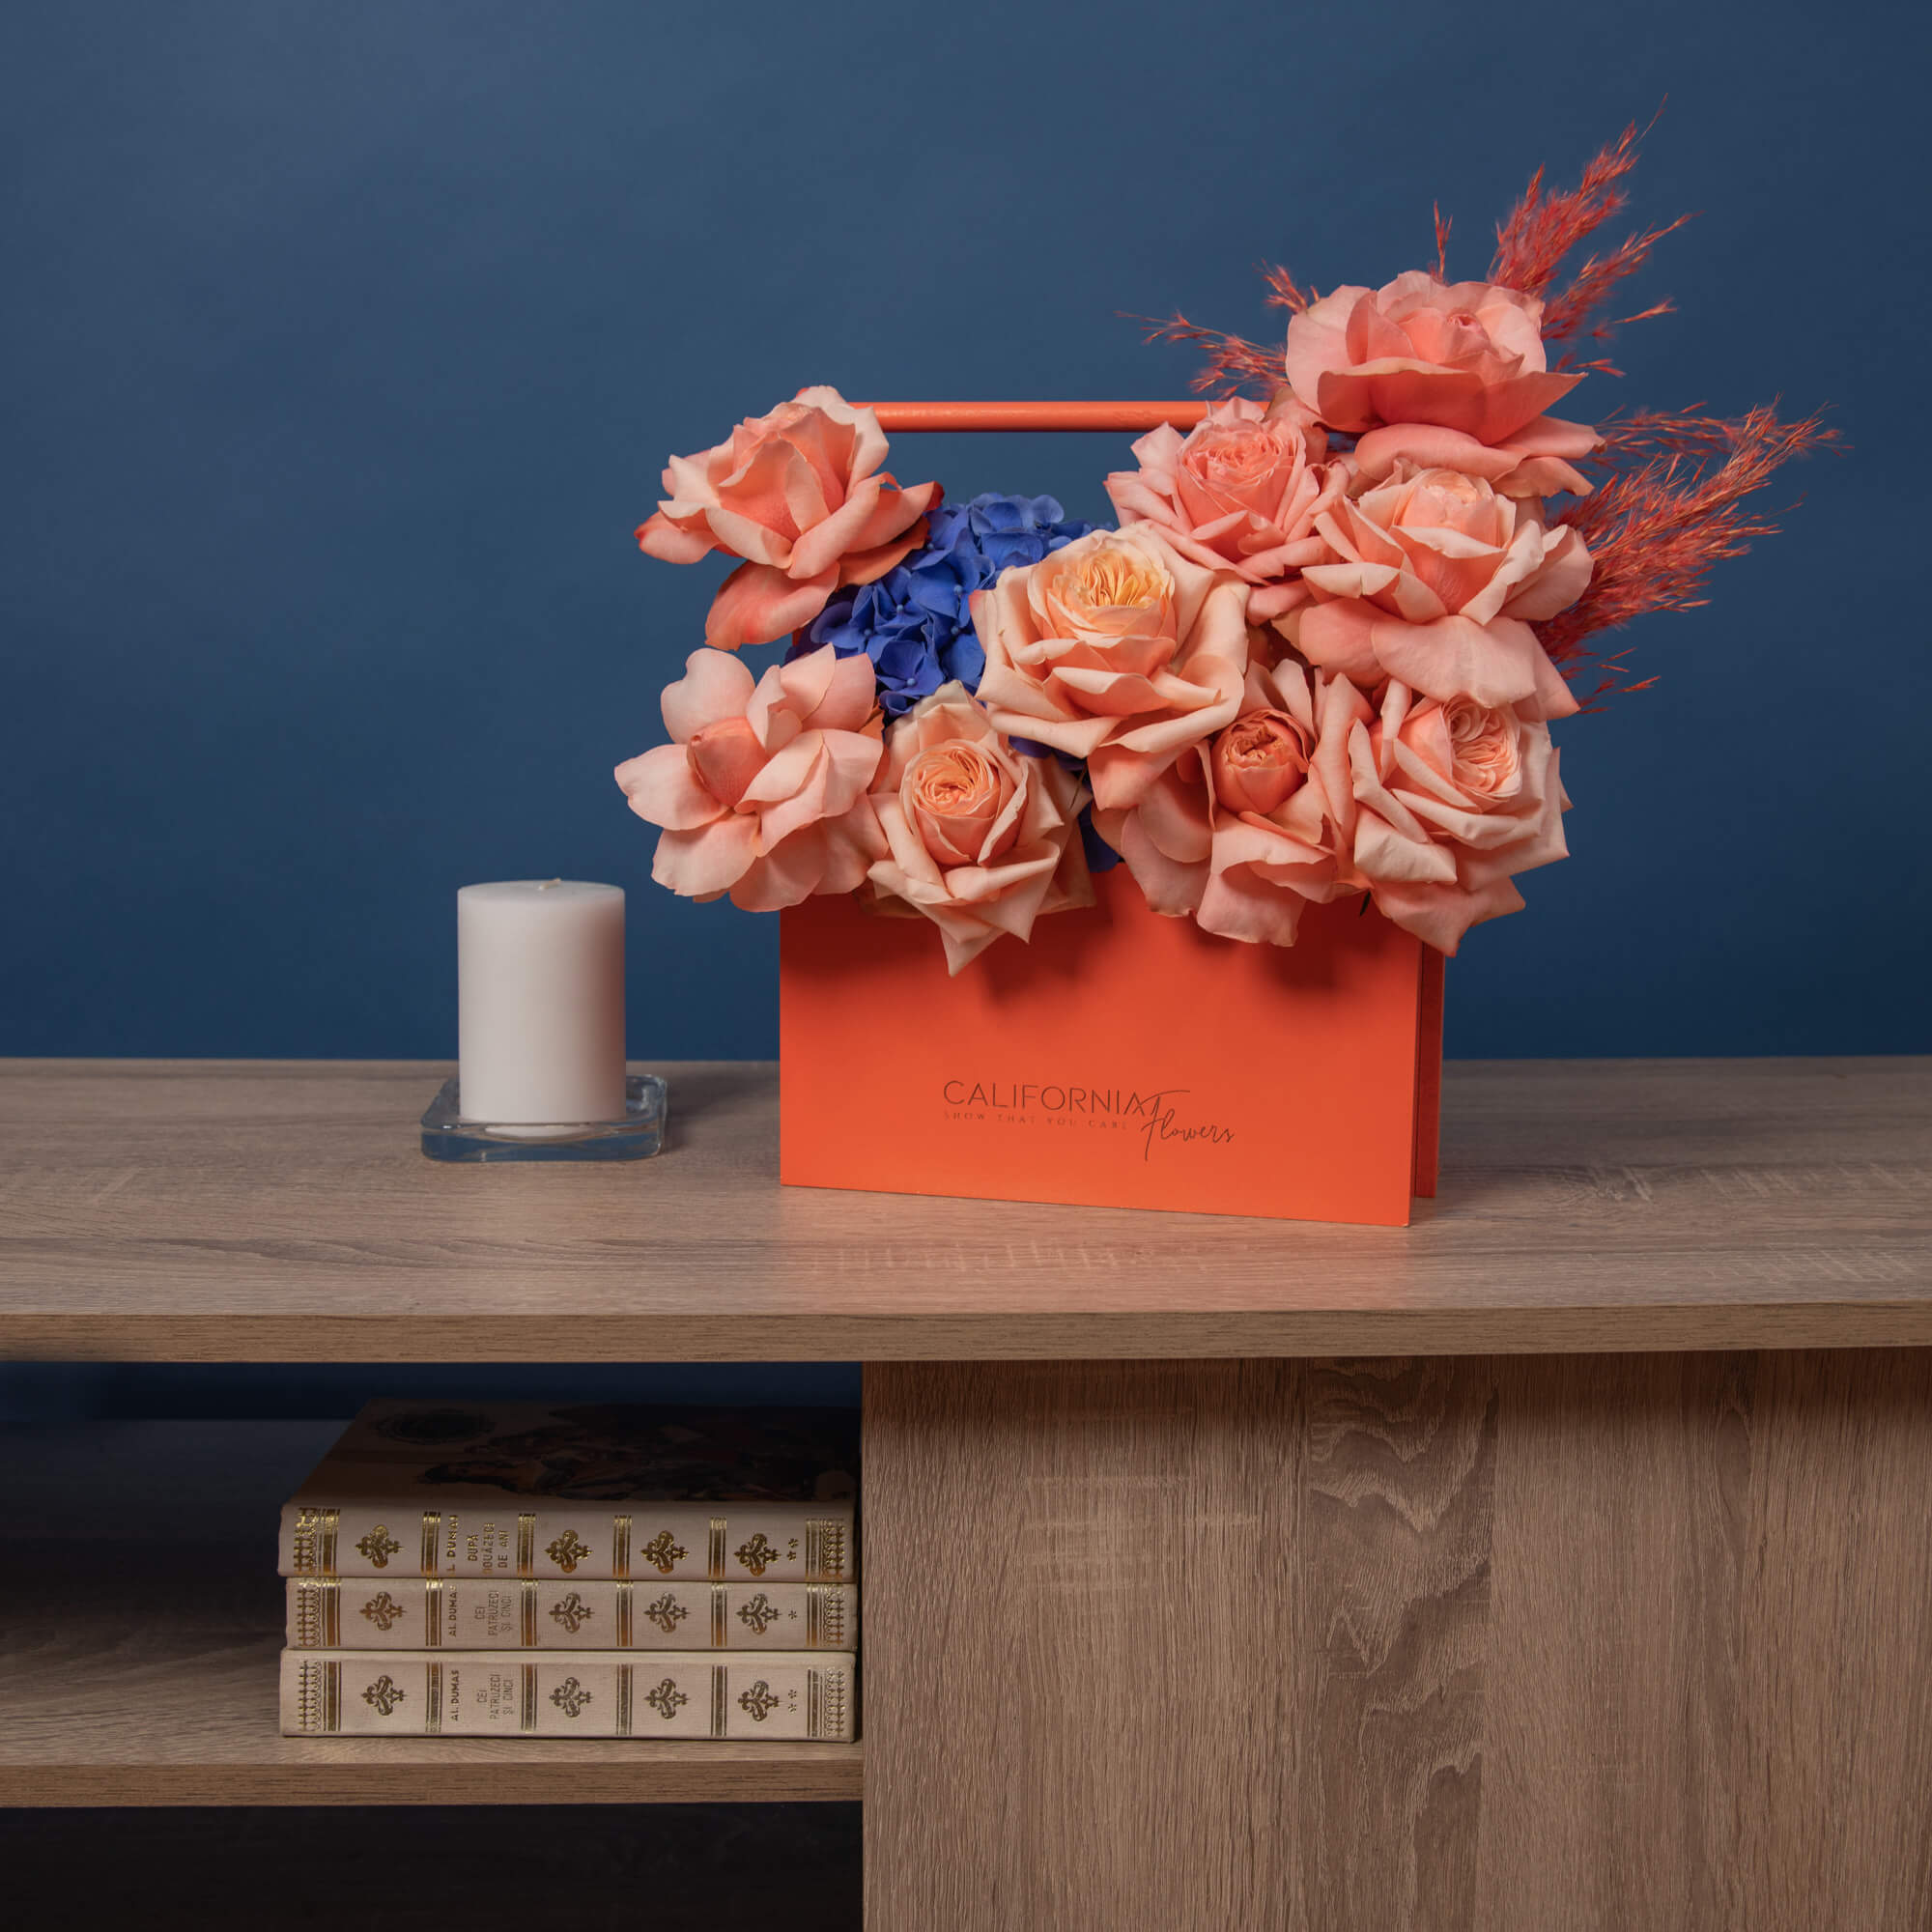 Aranjament floral in cutie cu trandafiri si hortensie albastra, 3